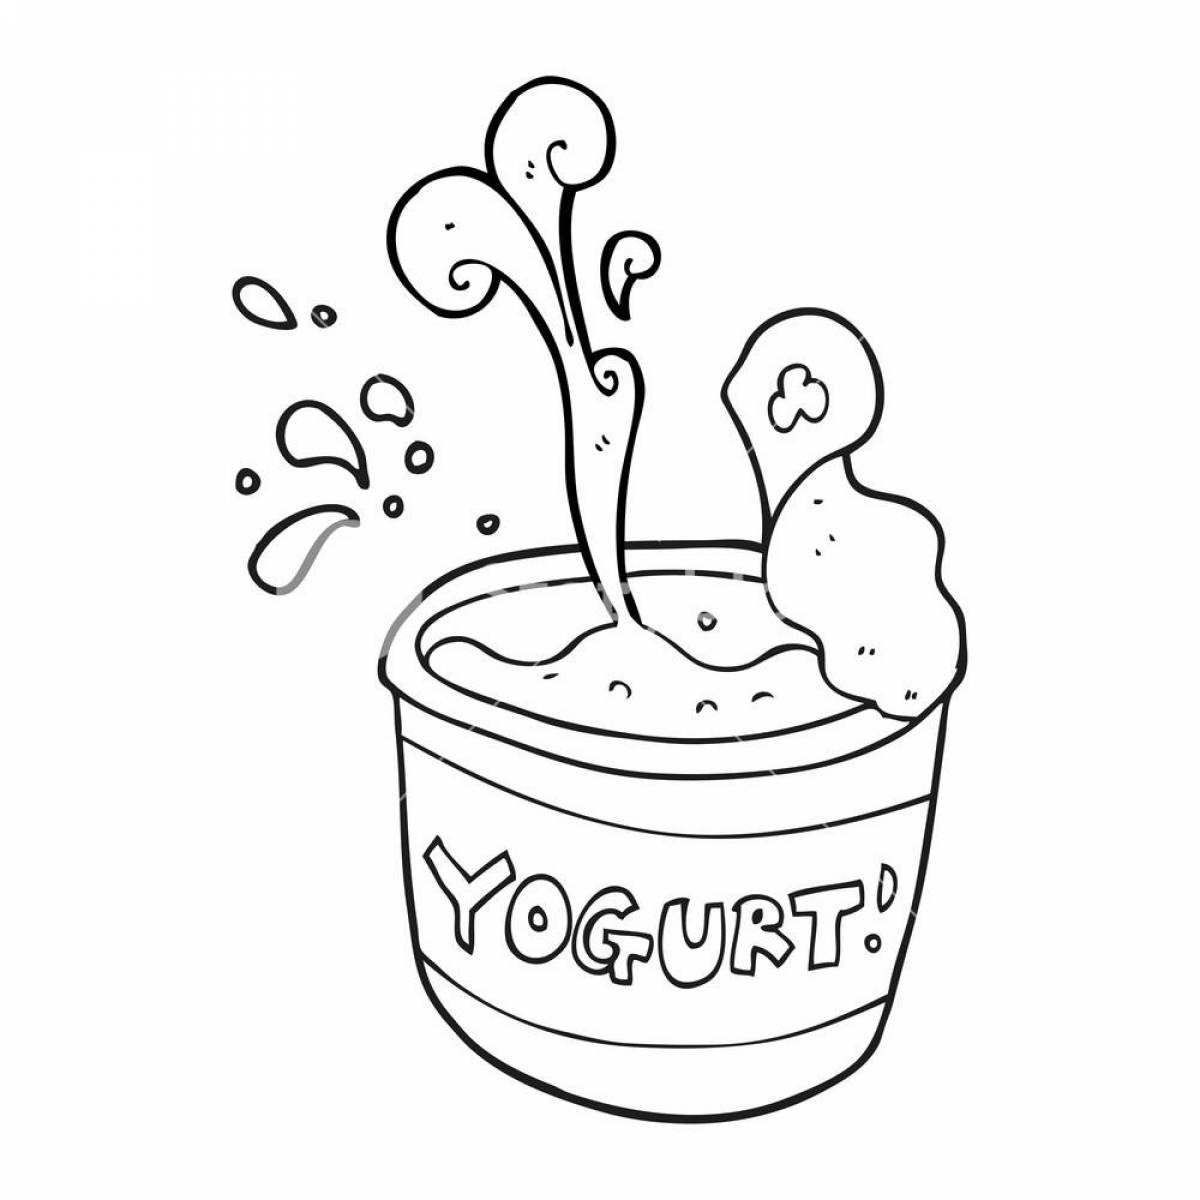 Fabulous yogurt coloring book